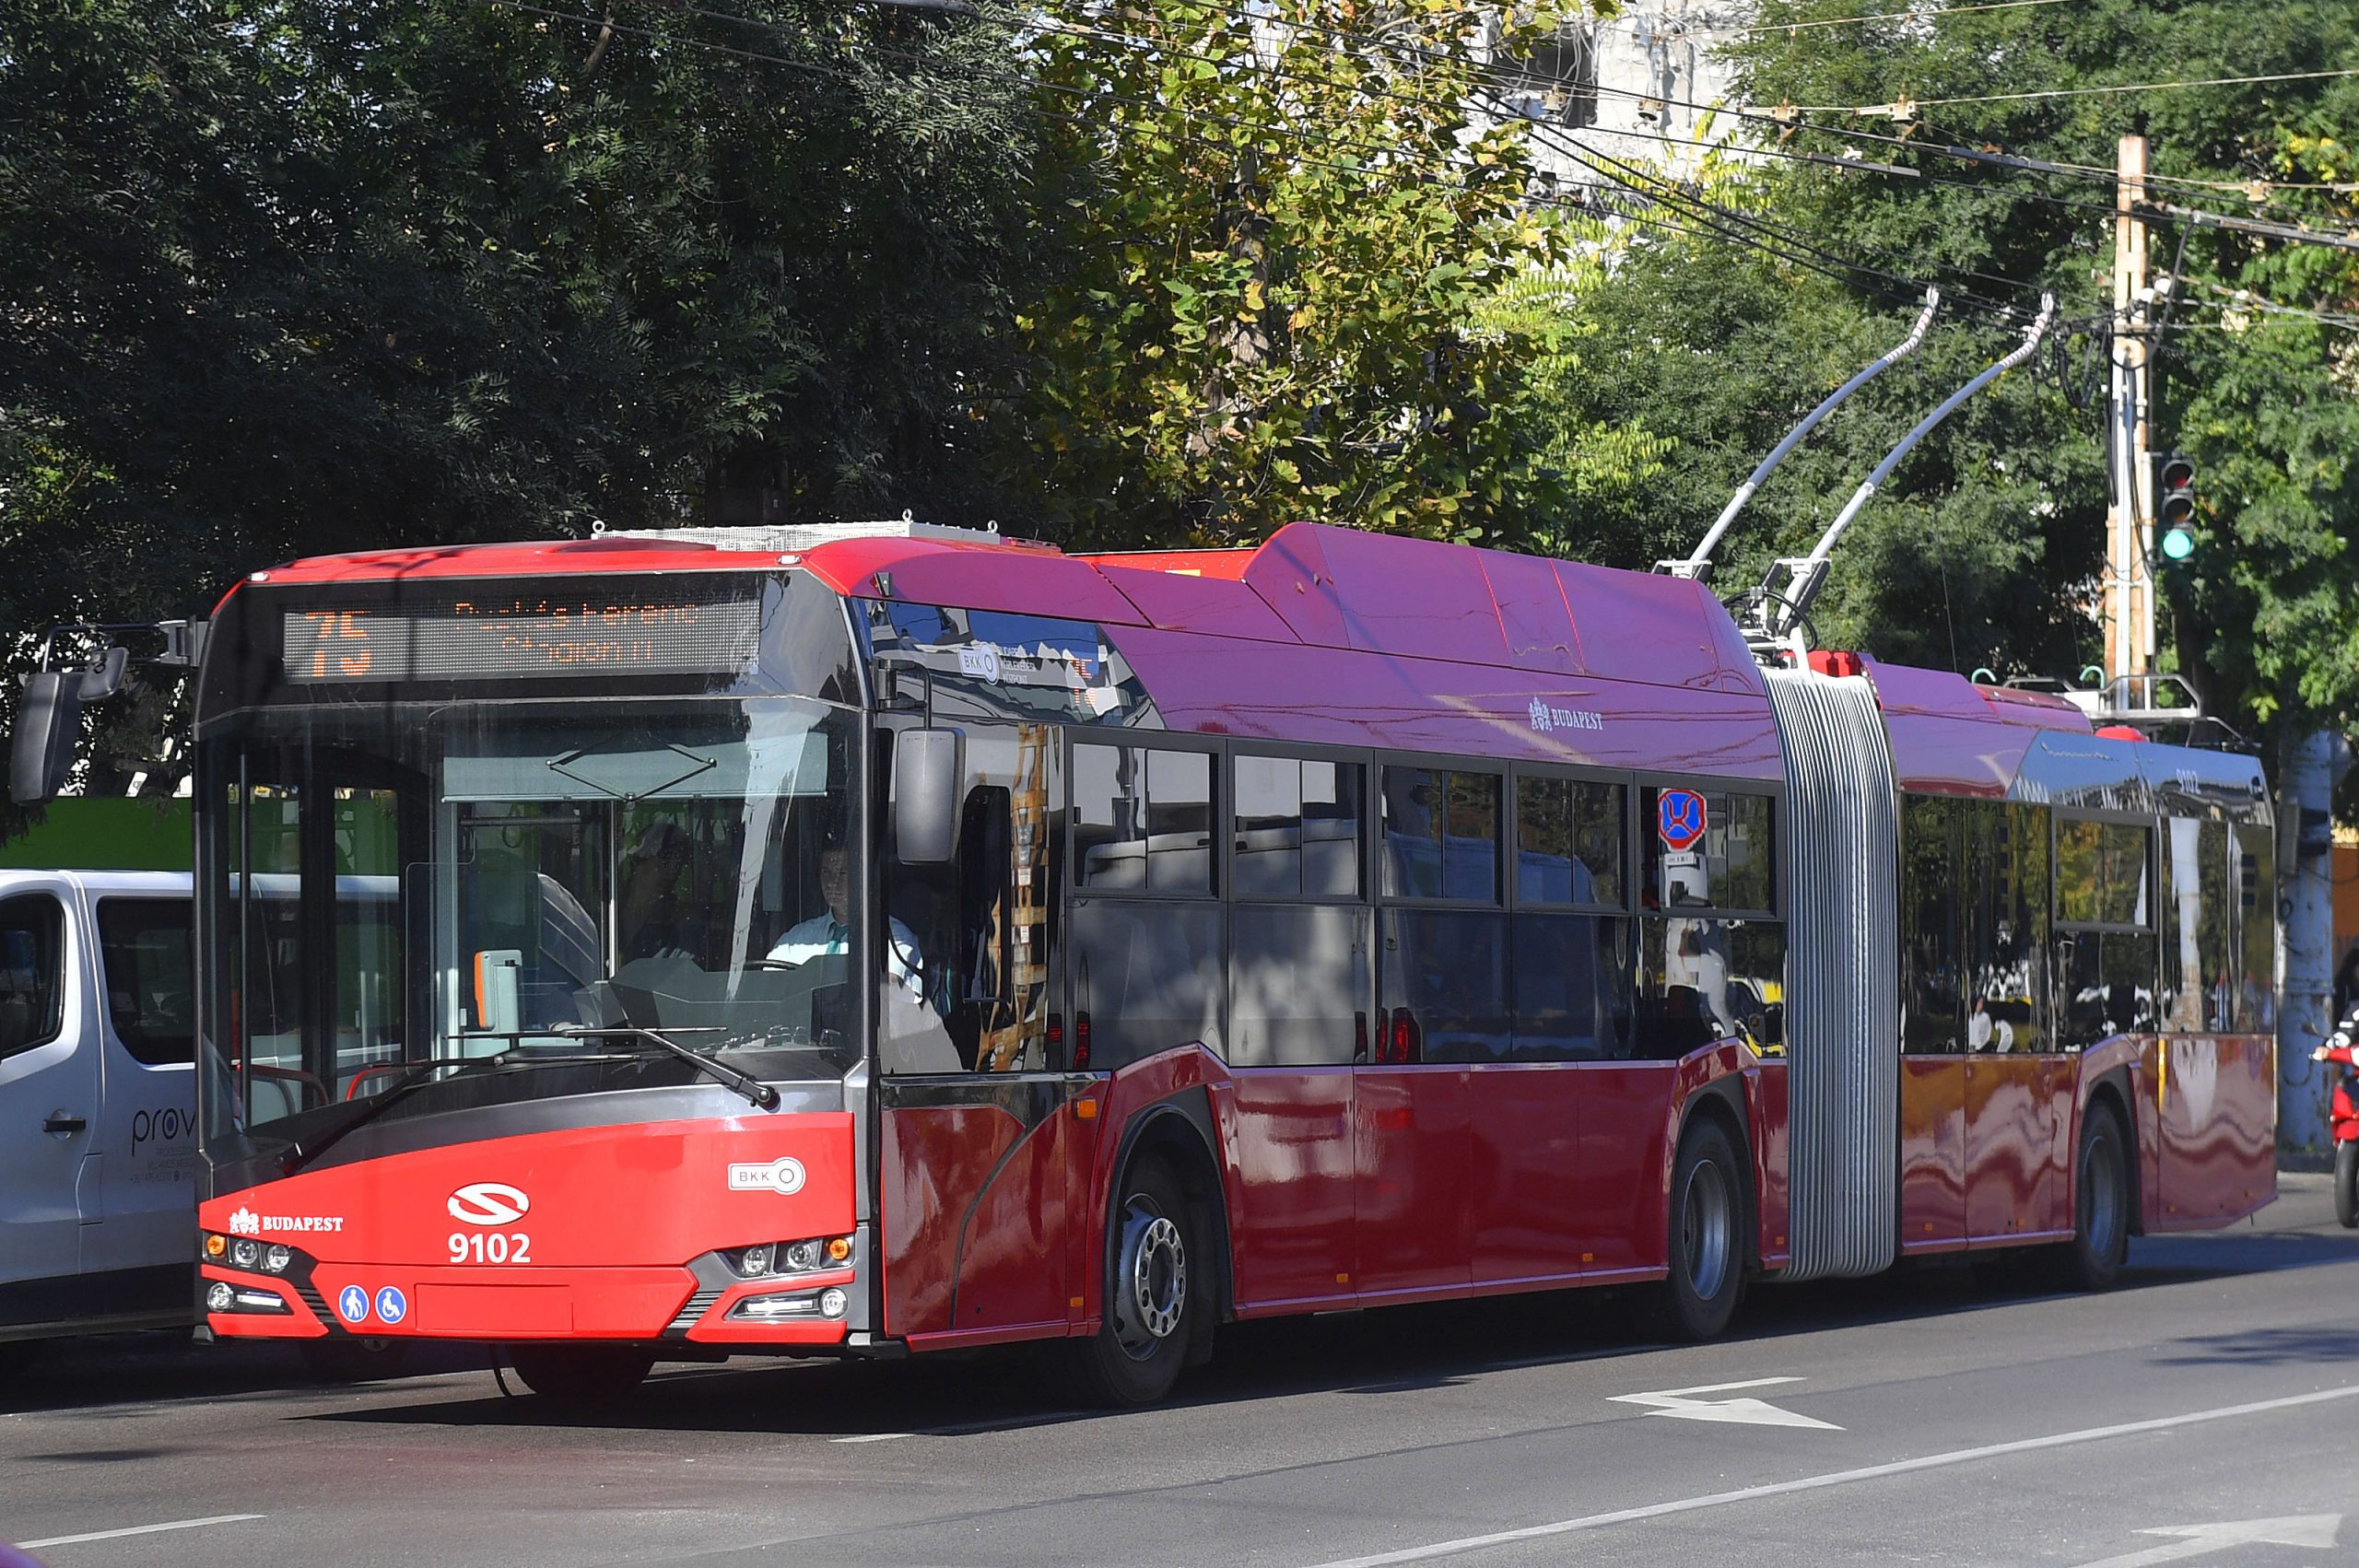 Visszaáll az első ajtós felszállási rend a fővárosi buszokon és trolibuszokon